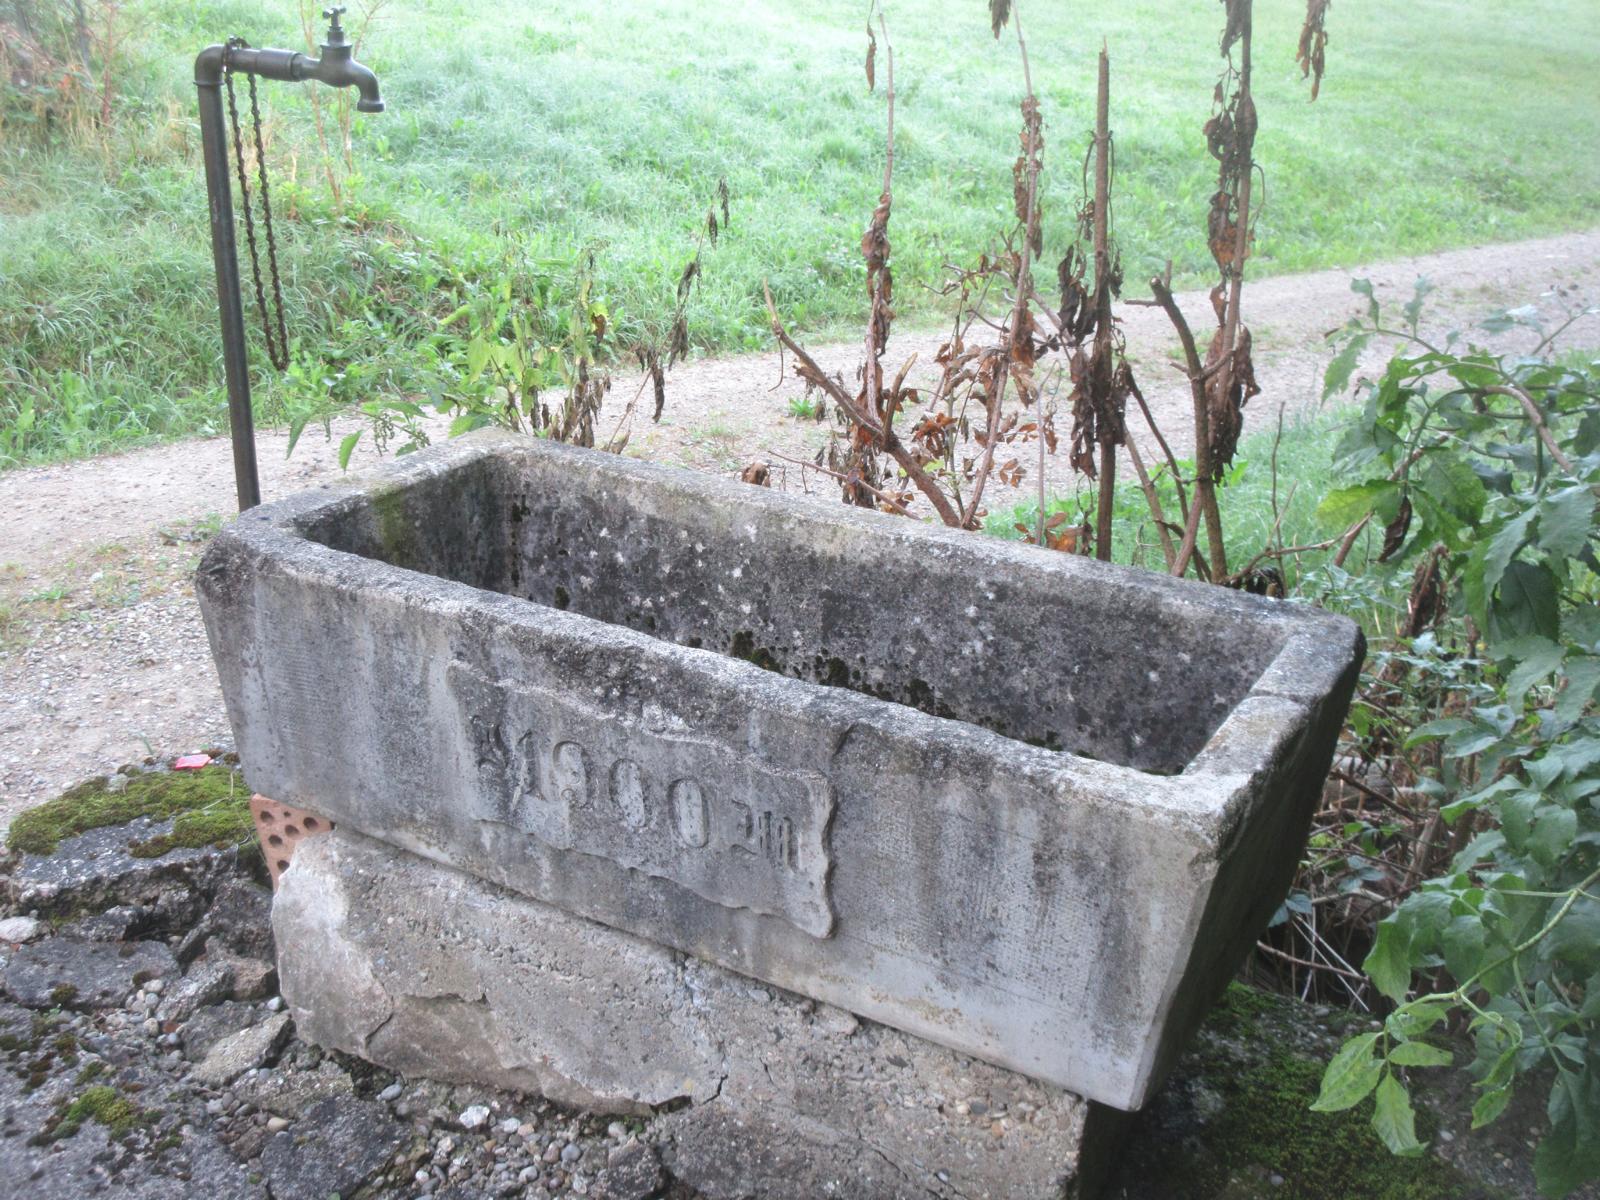 Anwilerstr. 106 *** 1900 (Becken datiert) *** Beton *** -- *** Drei Brunnen an der Anwilerstrasse werden durch eine Privatquelle versorgt. Brunnen nicht mehr betrieben.